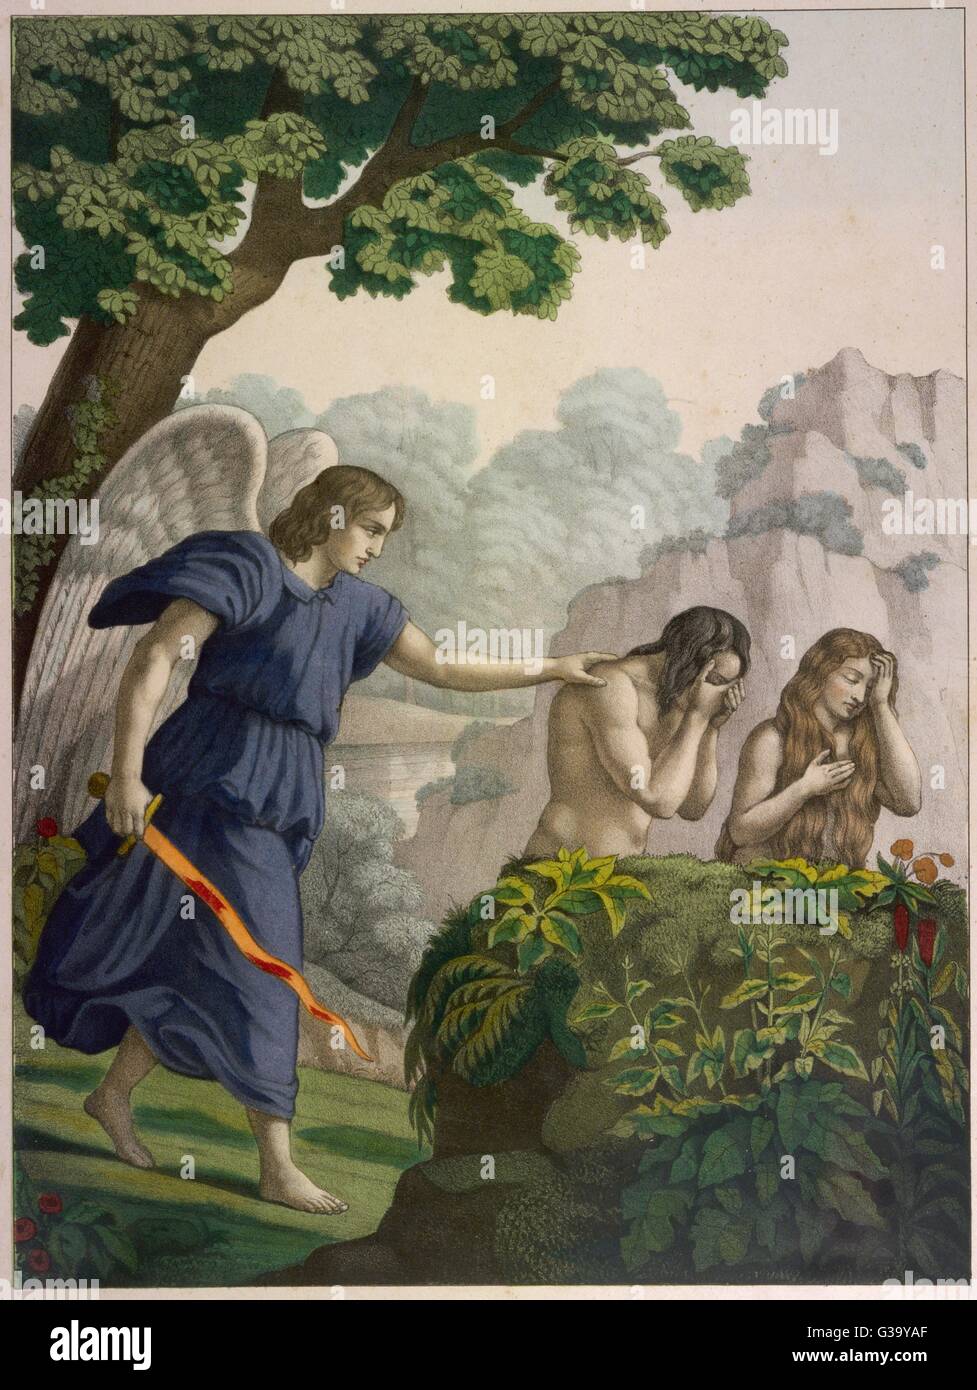 Feierabend im Garten Eden: das sündige paar haben, Paradies, vertrieben von  einem Engel mit einem glühenden Schwert zu verlassen Stockfotografie - Alamy